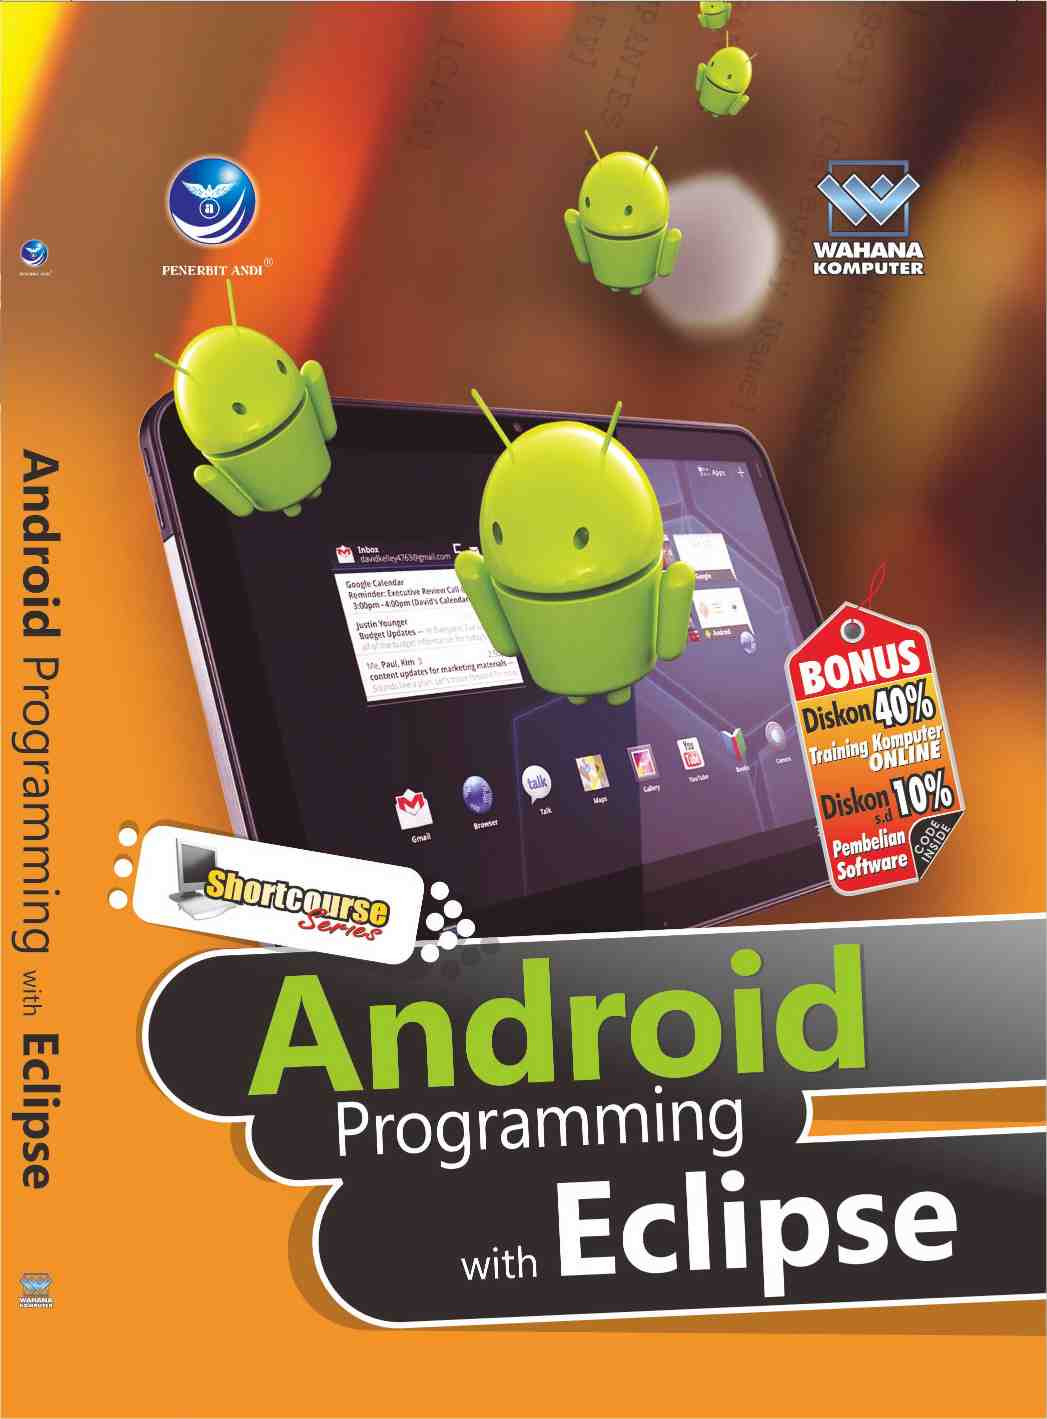 Android programing